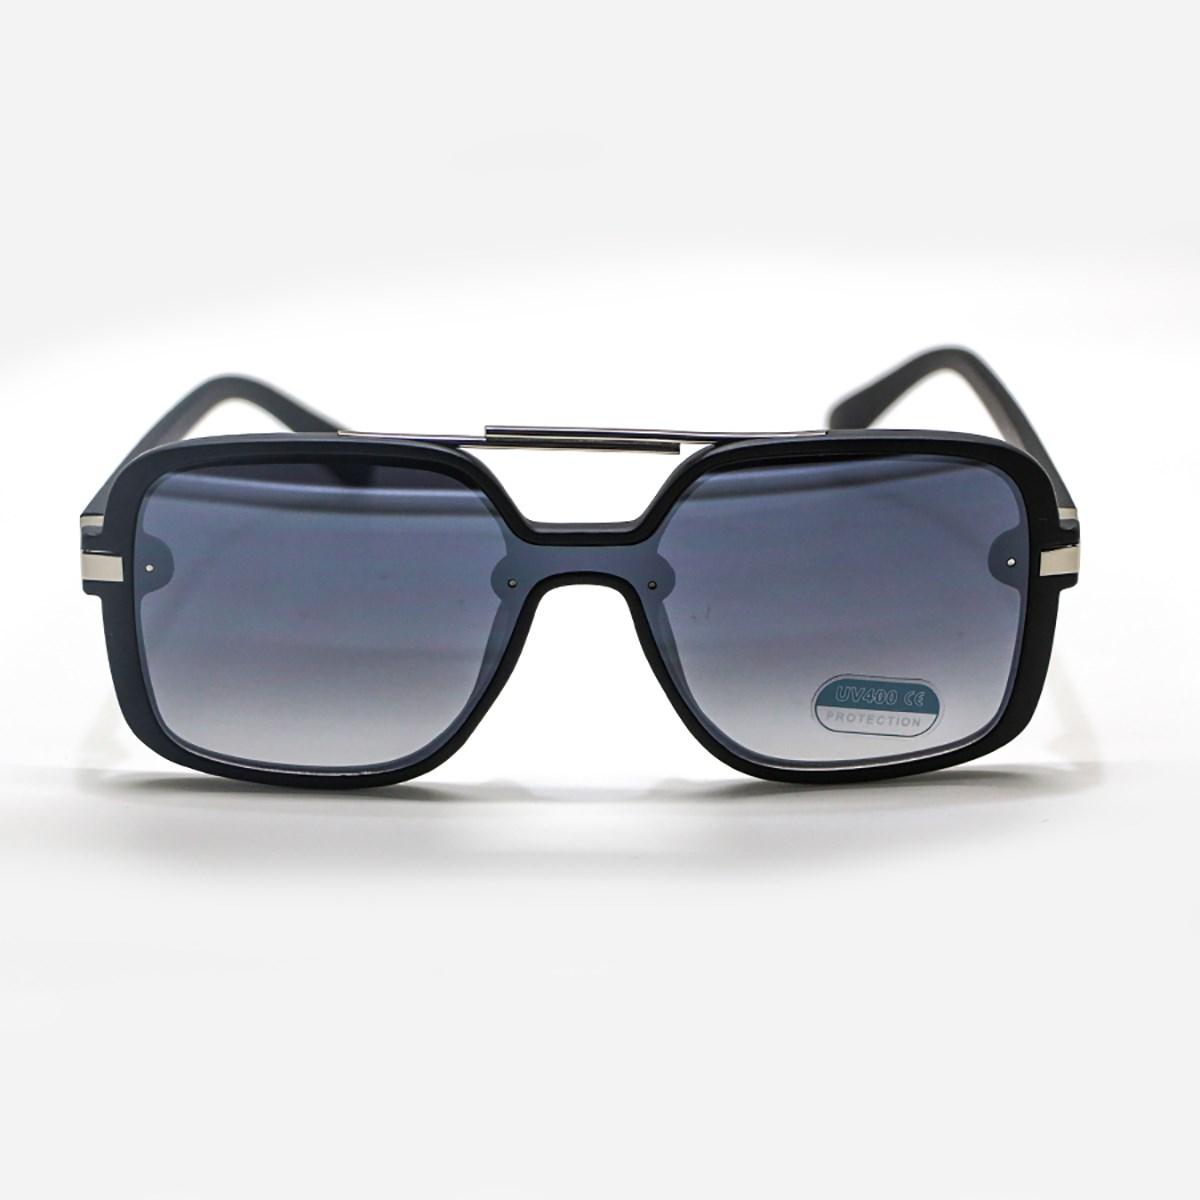 Óculos Preto em Acetato com Lente Espelhada | Ref: OC-0015